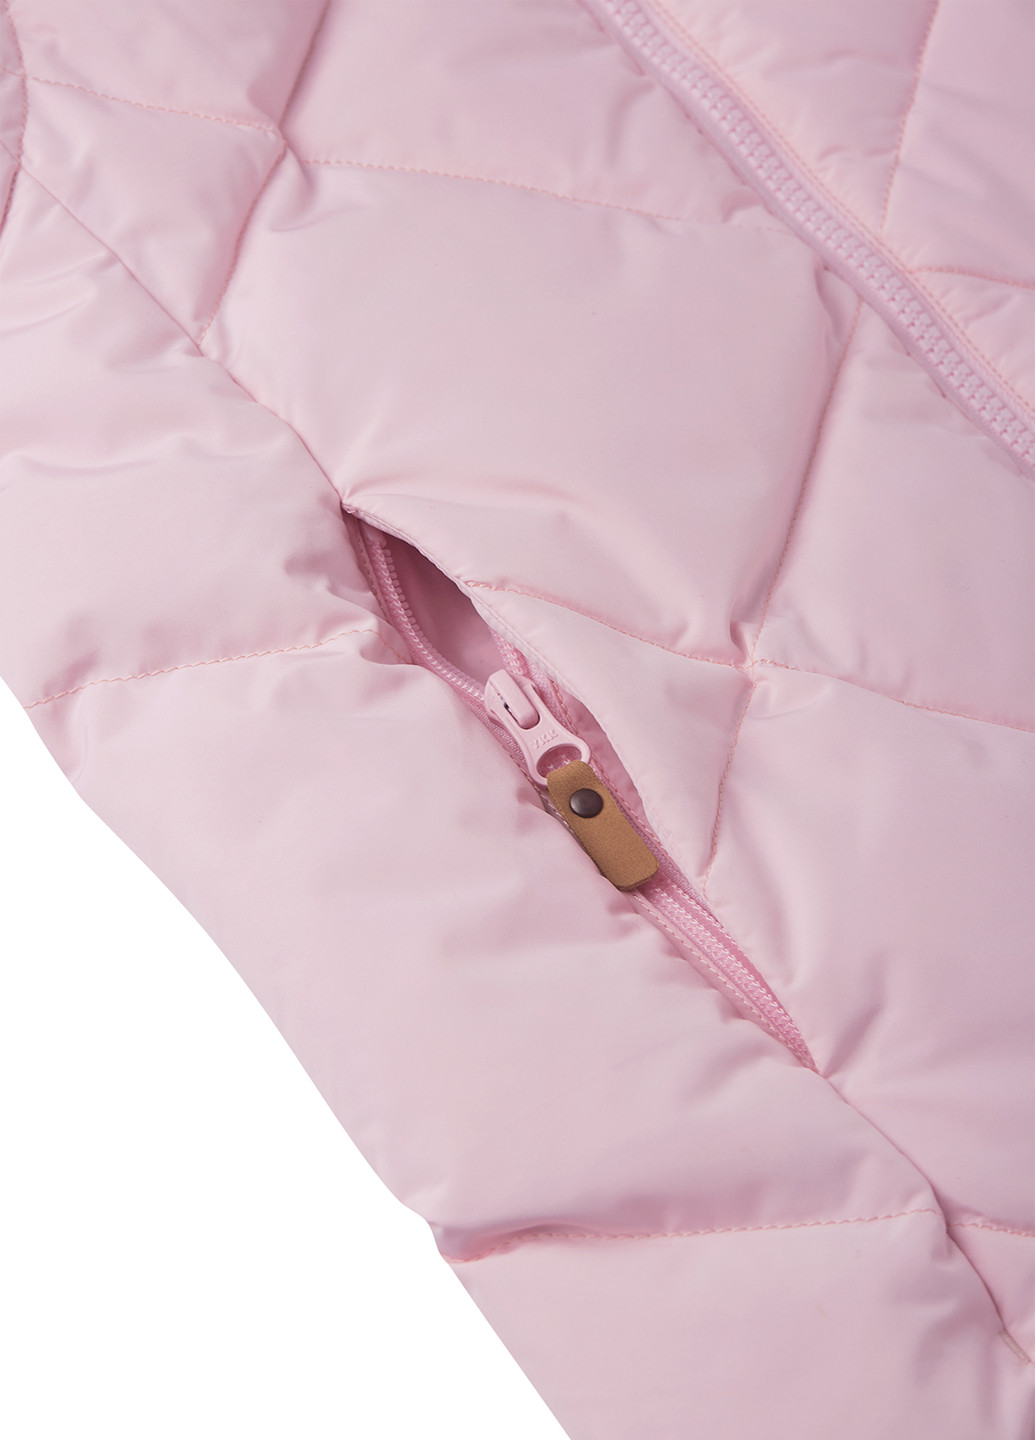 Розовая зимняя куртка пуховая 2в1 Reima Paahto